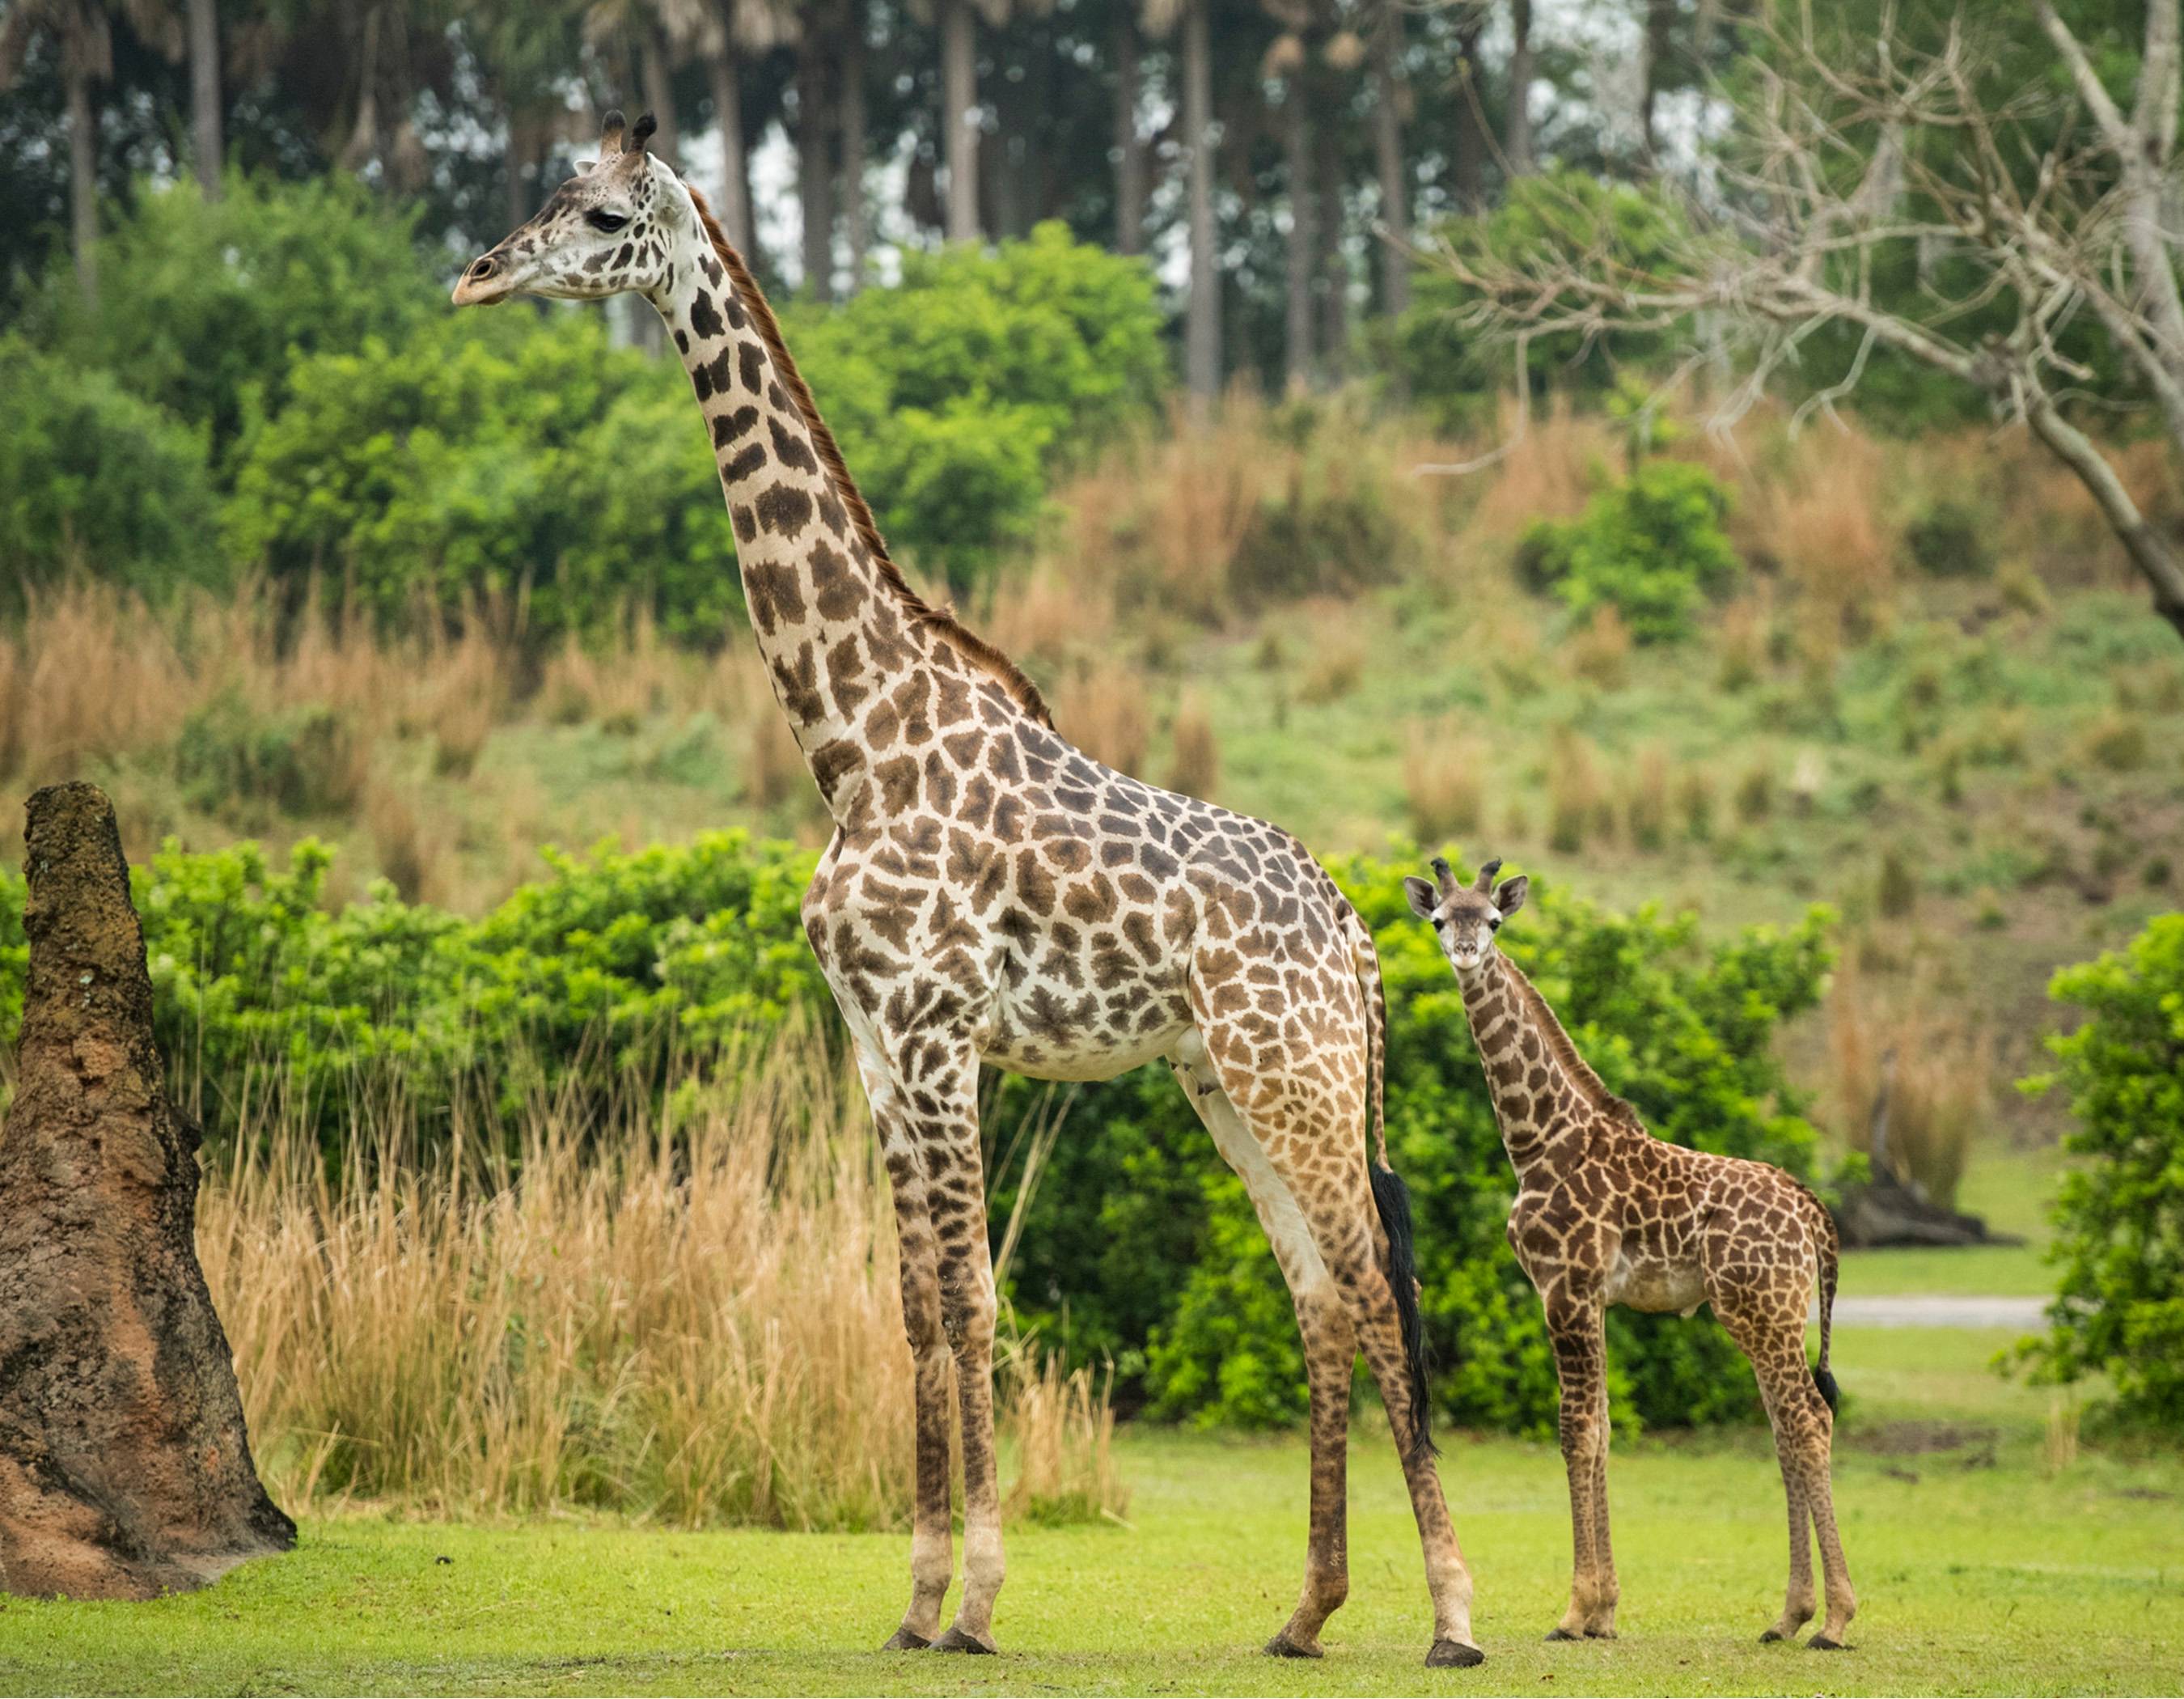 VIDEO - 2 month-old male Masai giraffe named Jabari joins Kilimanjaro Safaris